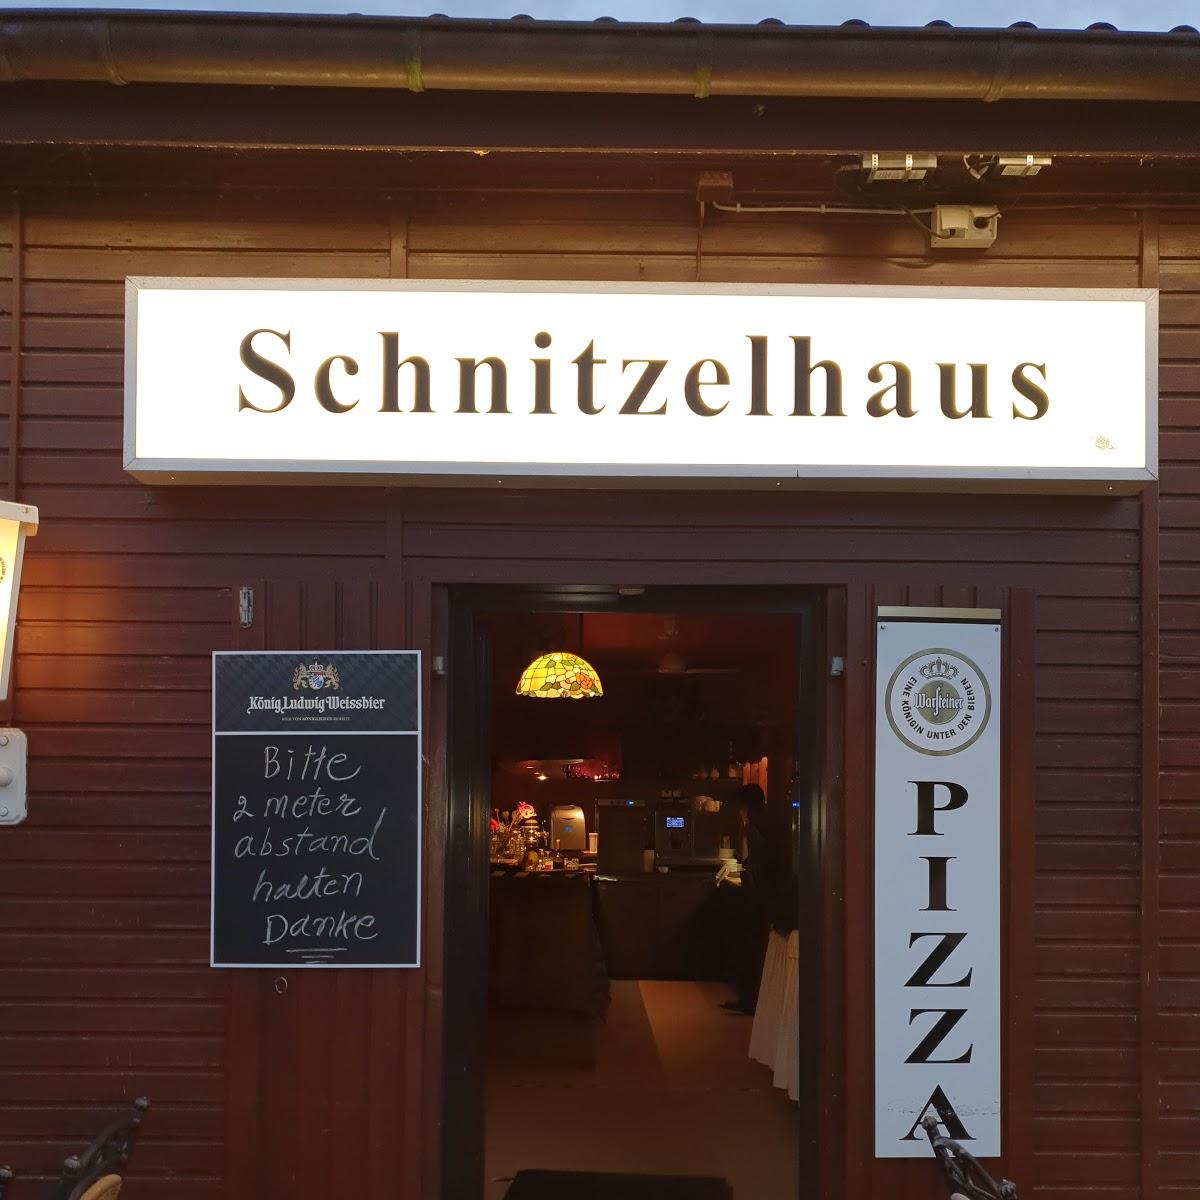 Restaurant "Schnitzelhaus am Hafen" in Senheim (Mosel)